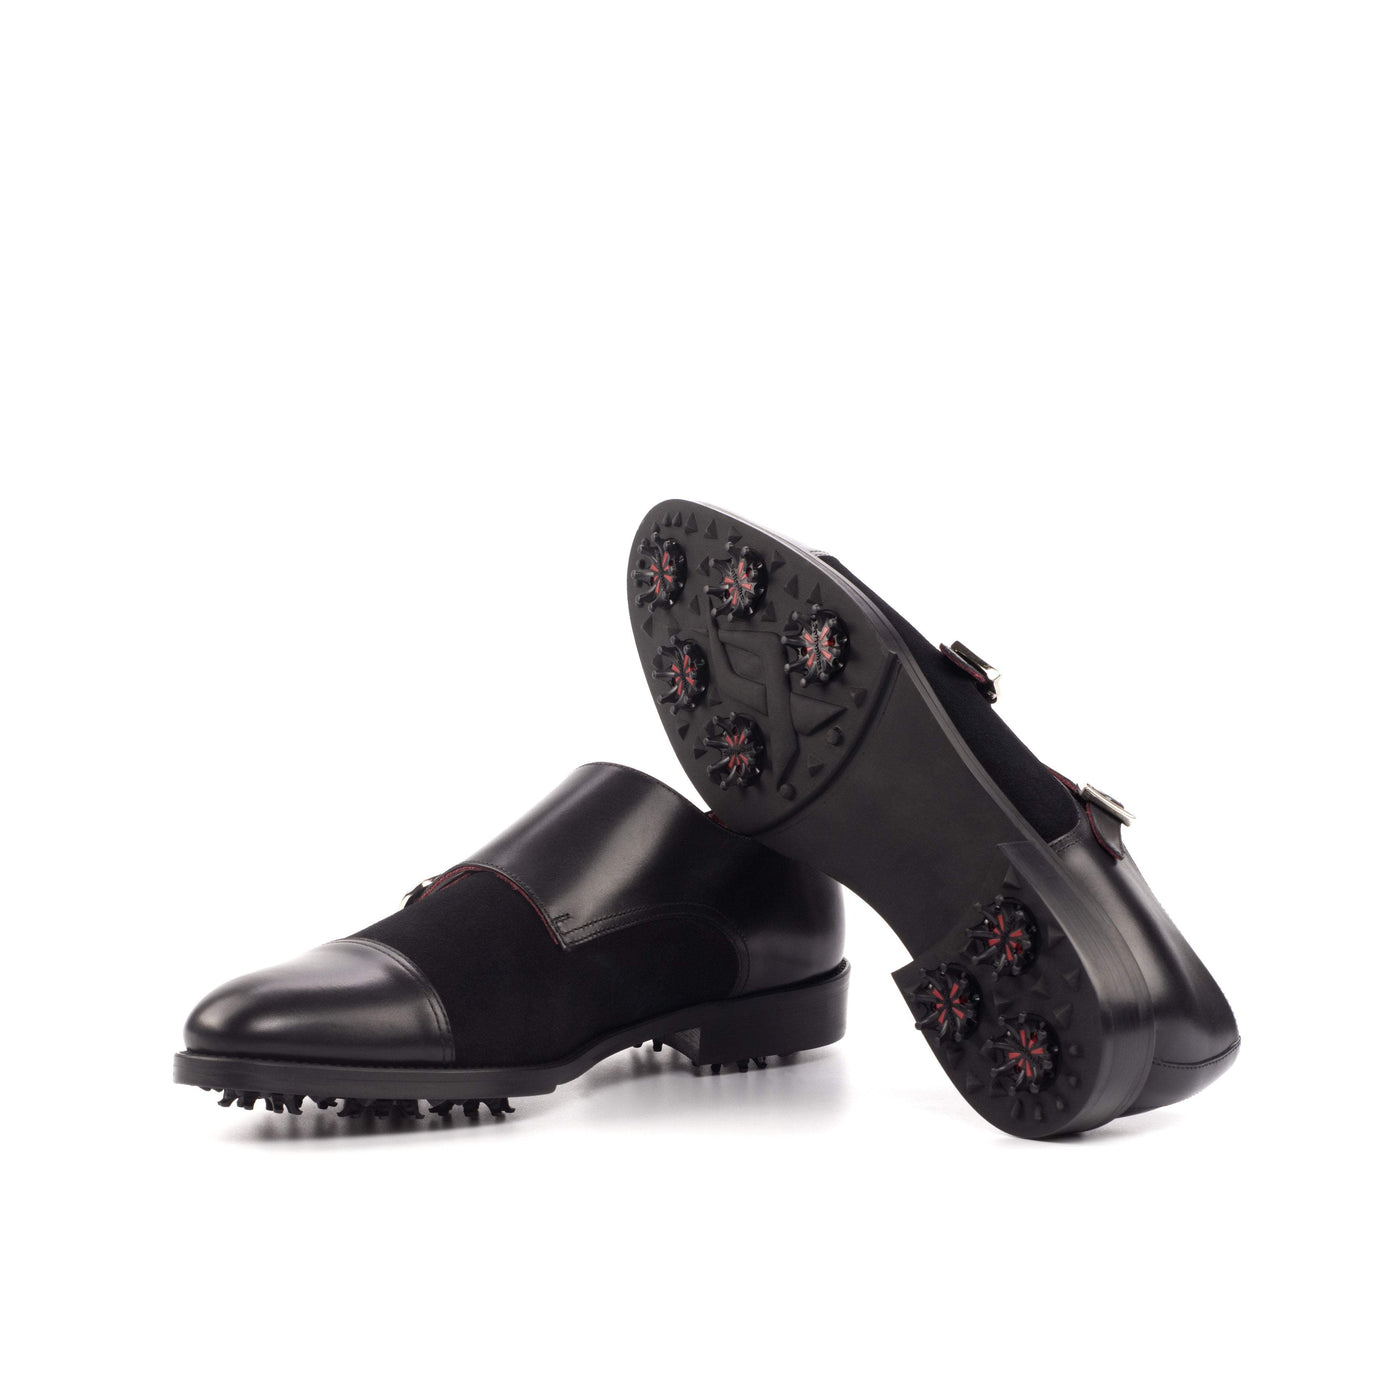 Men's Double Monk Golf Shoes Leather Black 4637 2- MERRIMIUM